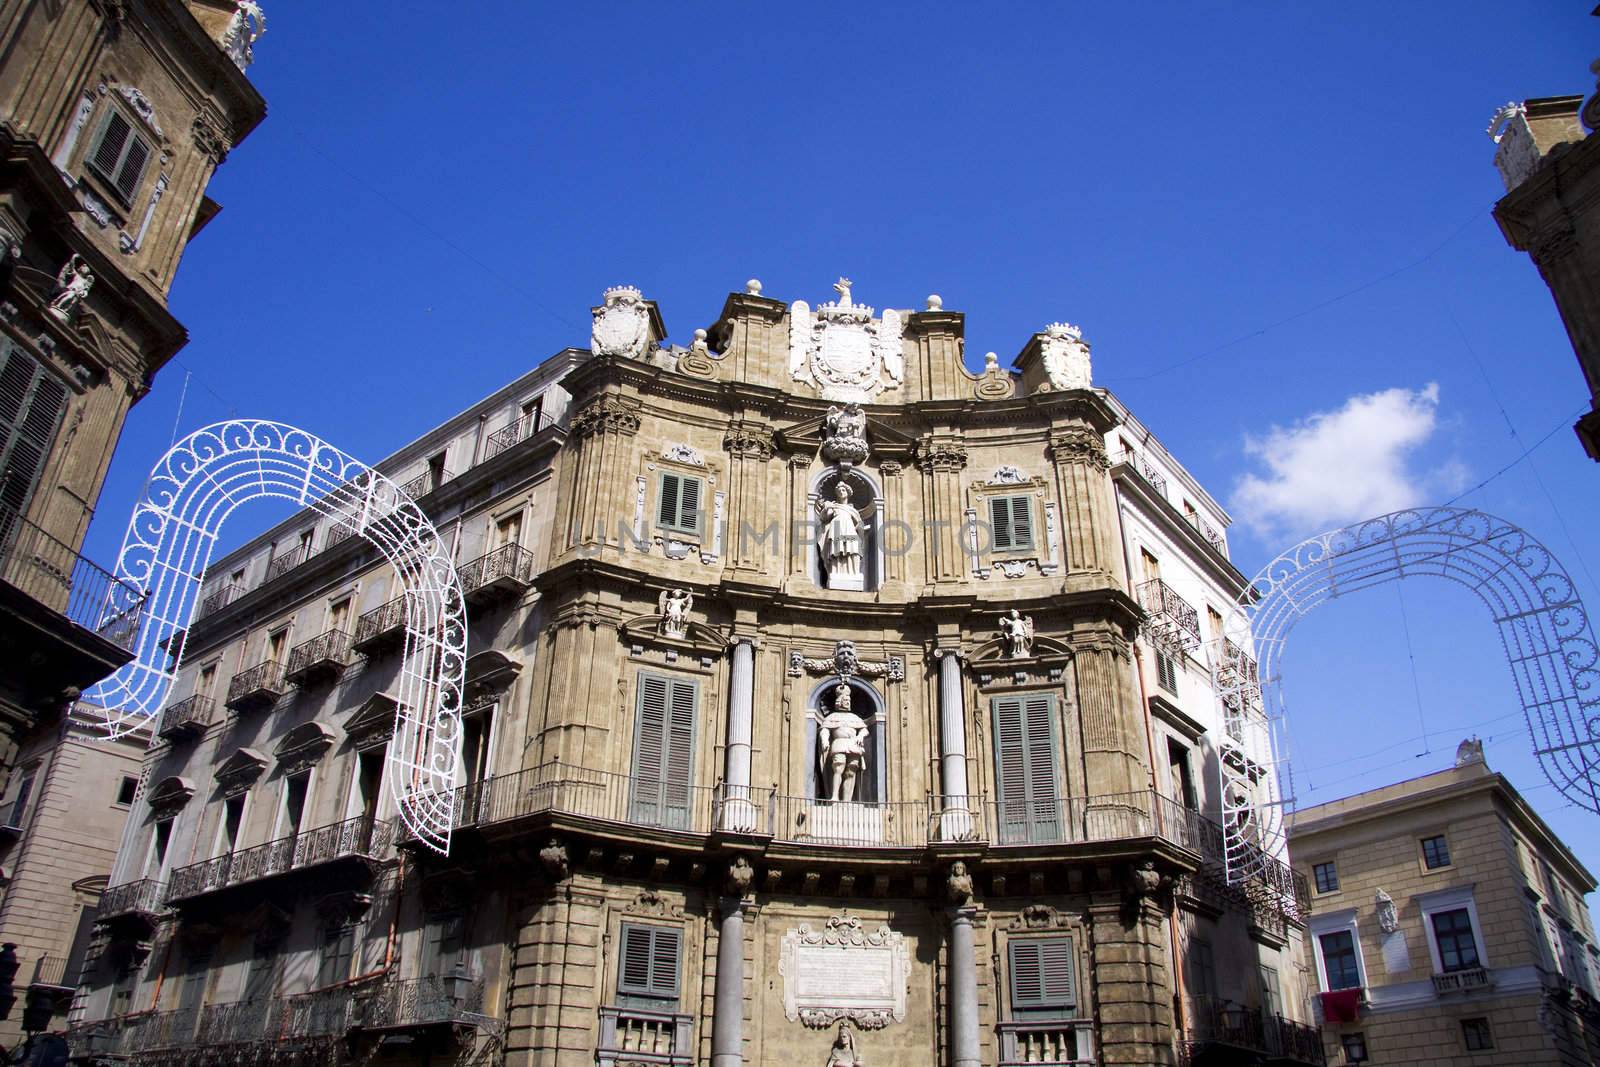 Quatro cante in Palermo - center of the city